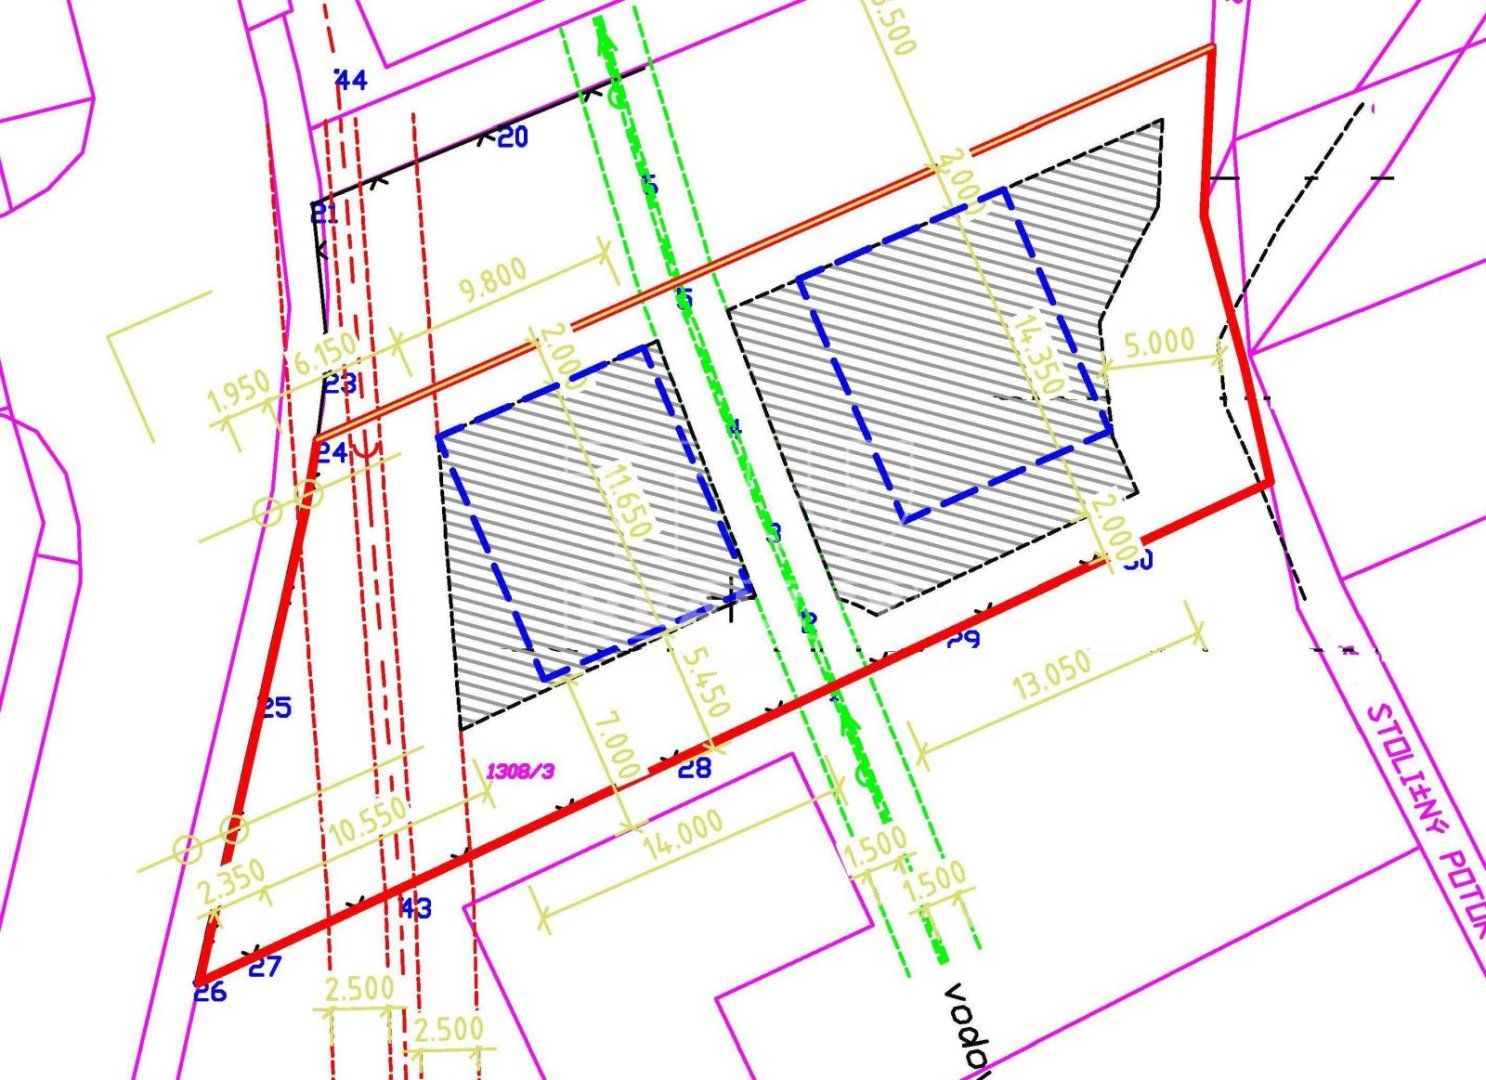 VYNIKAJÚCA PRÍEŽITOSŤ -> predaj stavebného POZEMKU v super časti mesta MODRA, 860 m2